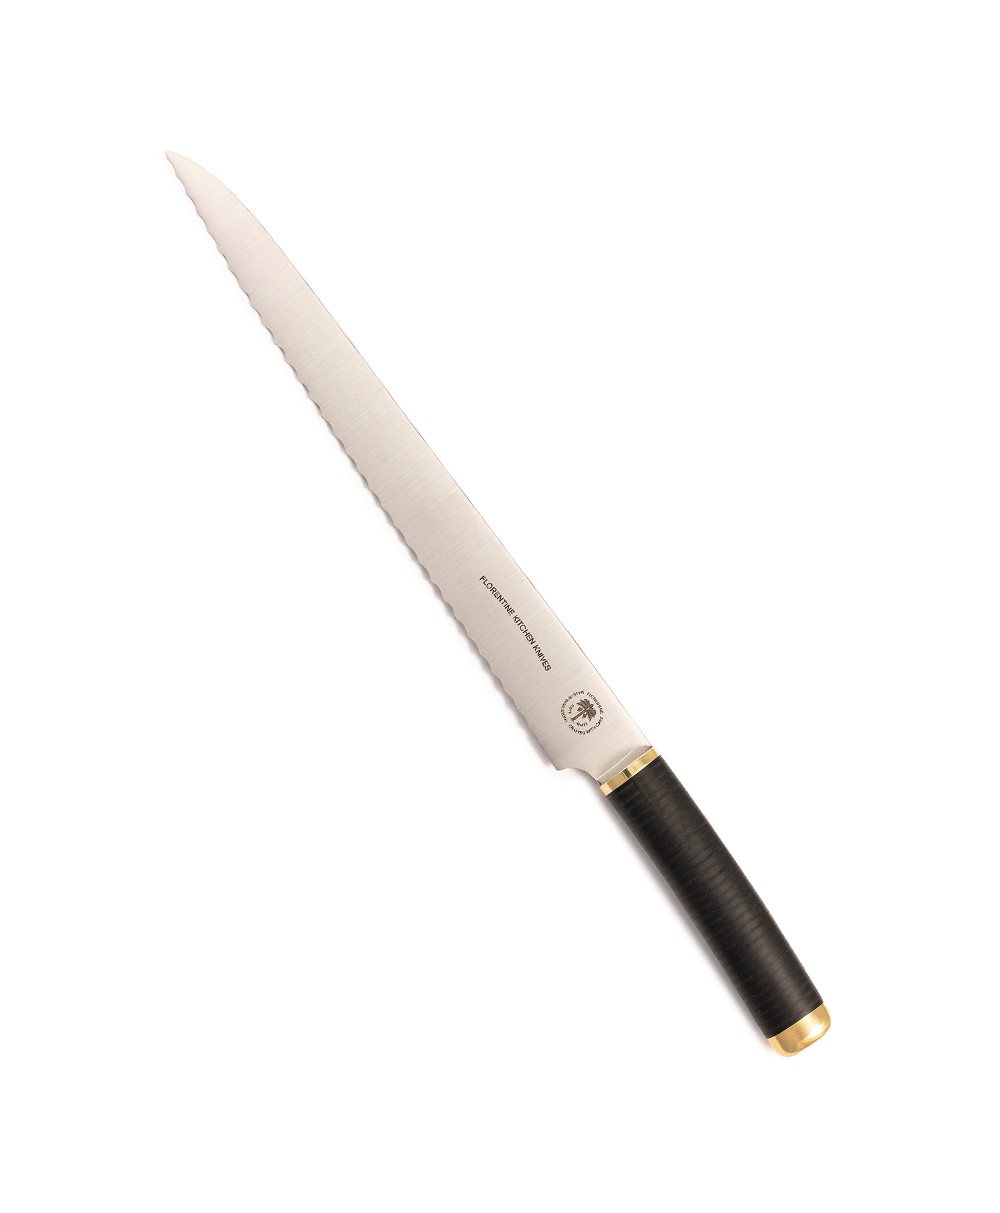 Produktbild des Florentine Brotmessers  in schwarz von Florentine Kitchen Knives im RAUM concept store 